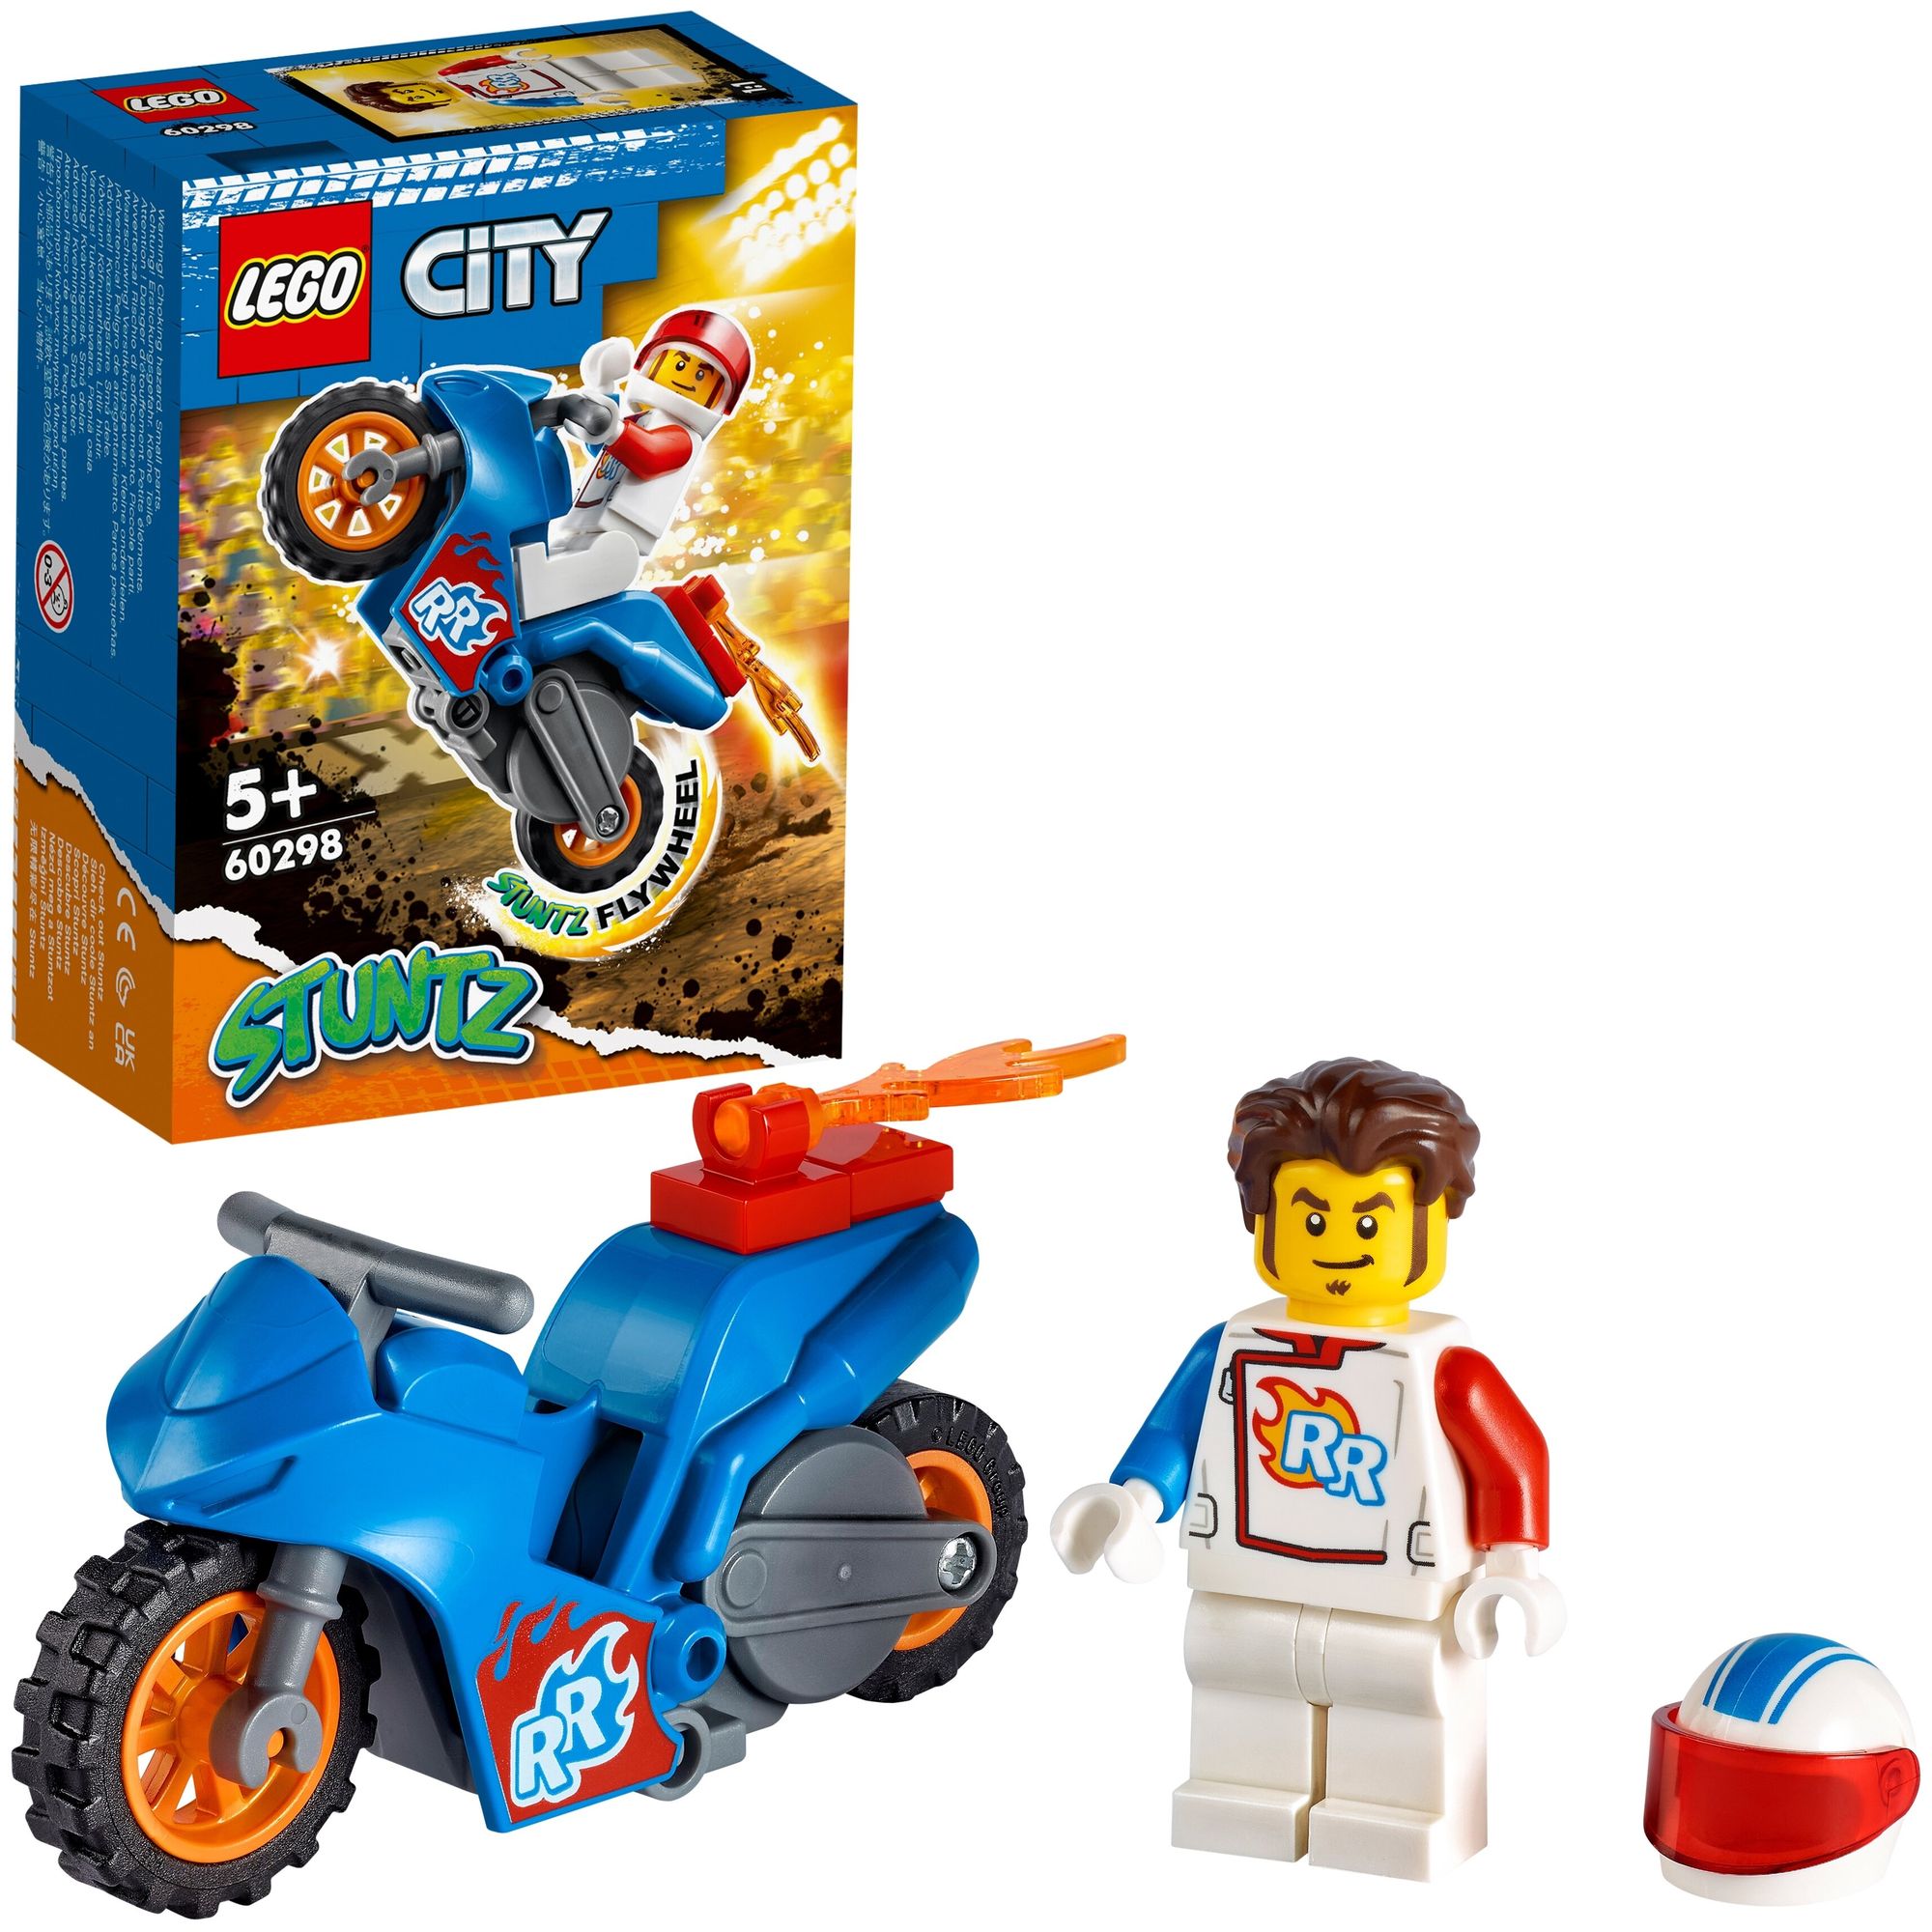 Конструктор LEGO 60298 City Rocket Stunt Bike (Реактивный трюковый мотоцикл) конструктор реактивный трюковый мотоцикл lego city stuntz 60298 5 14 элементов